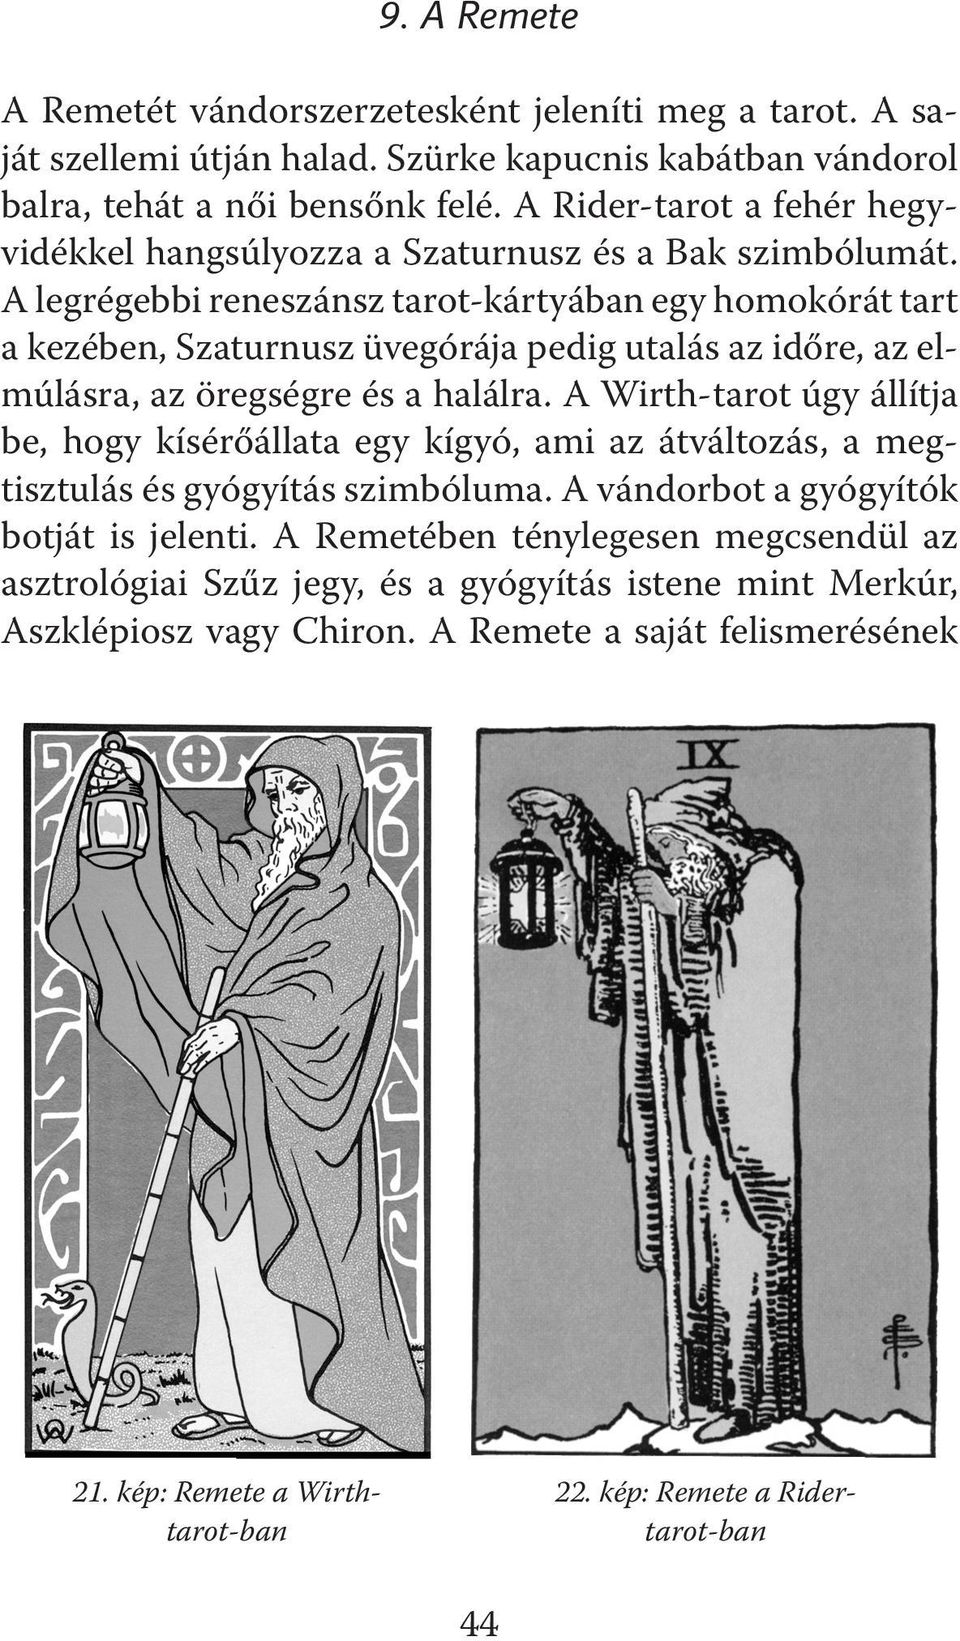 A legrégebbi reneszánsz tarot-kártyában egy homokórát tart a kezében, Szaturnusz üvegórája pedig utalás az időre, az elmúlásra, az öregségre és a halálra.